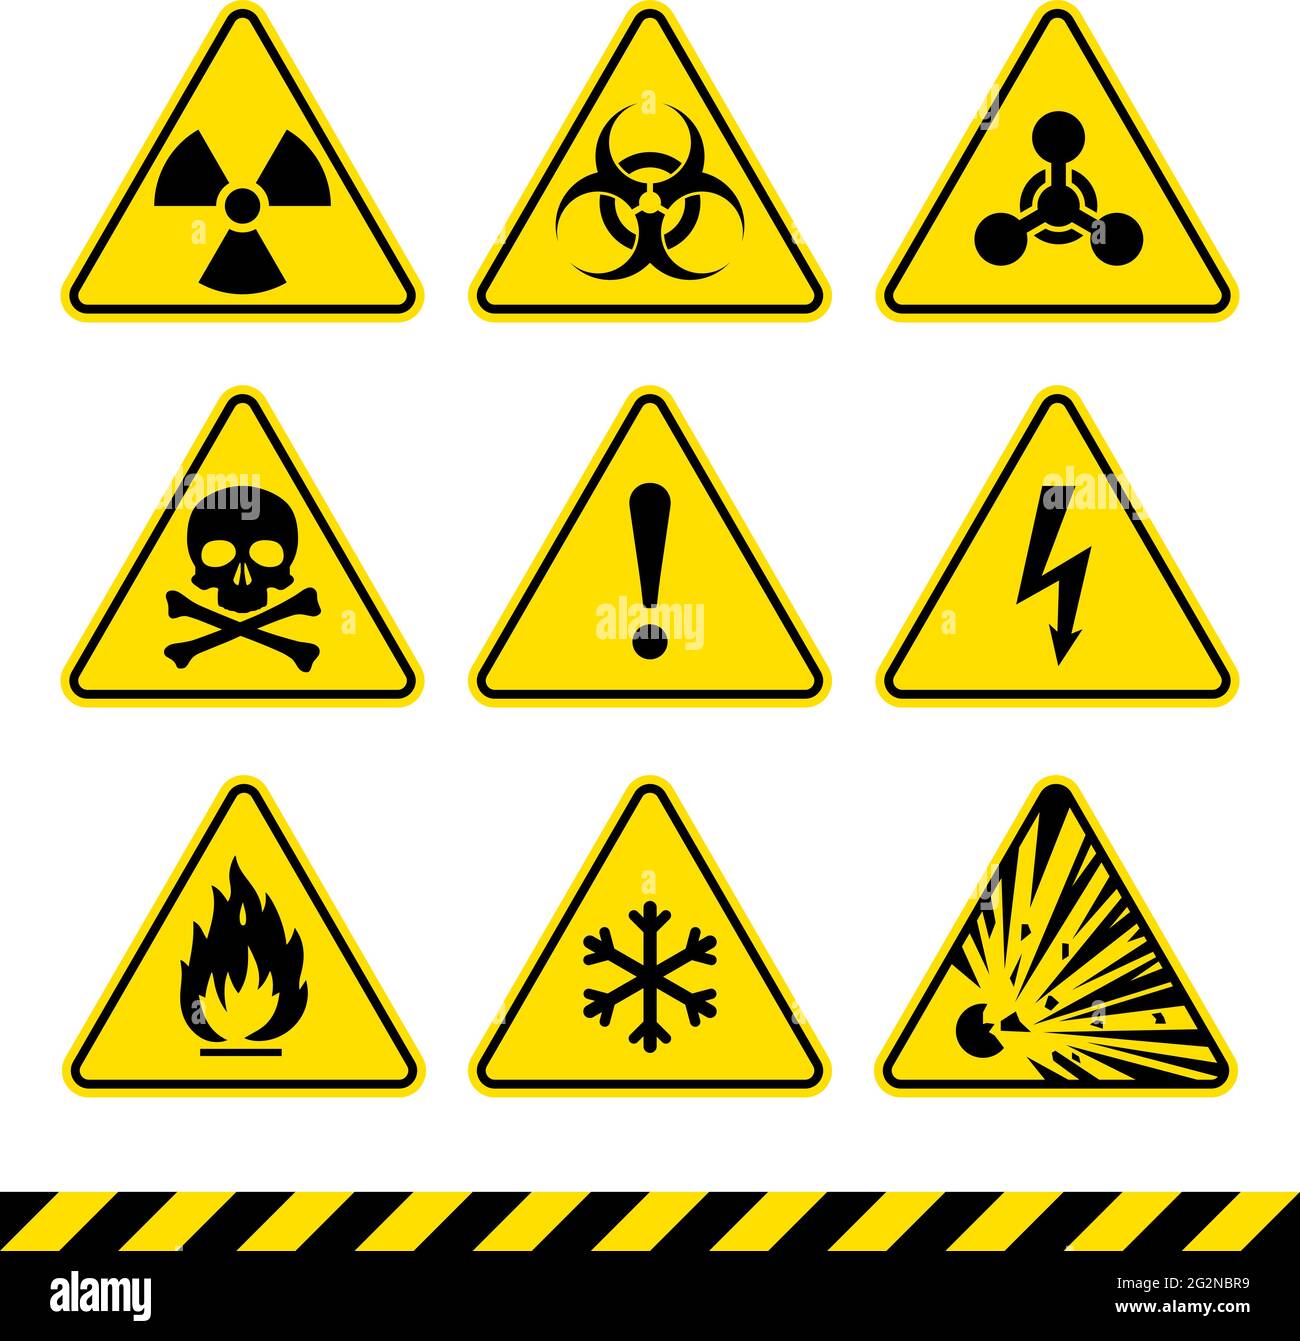 Segnali di avvertimento impostati. Icone di pericolo. Segnale di radiazione. Cartello di rischio biologico. Segno tossico. Simbolo nucleare. Simbolo infiammabile. Segnali di attenzione. Illustrazione Vettoriale